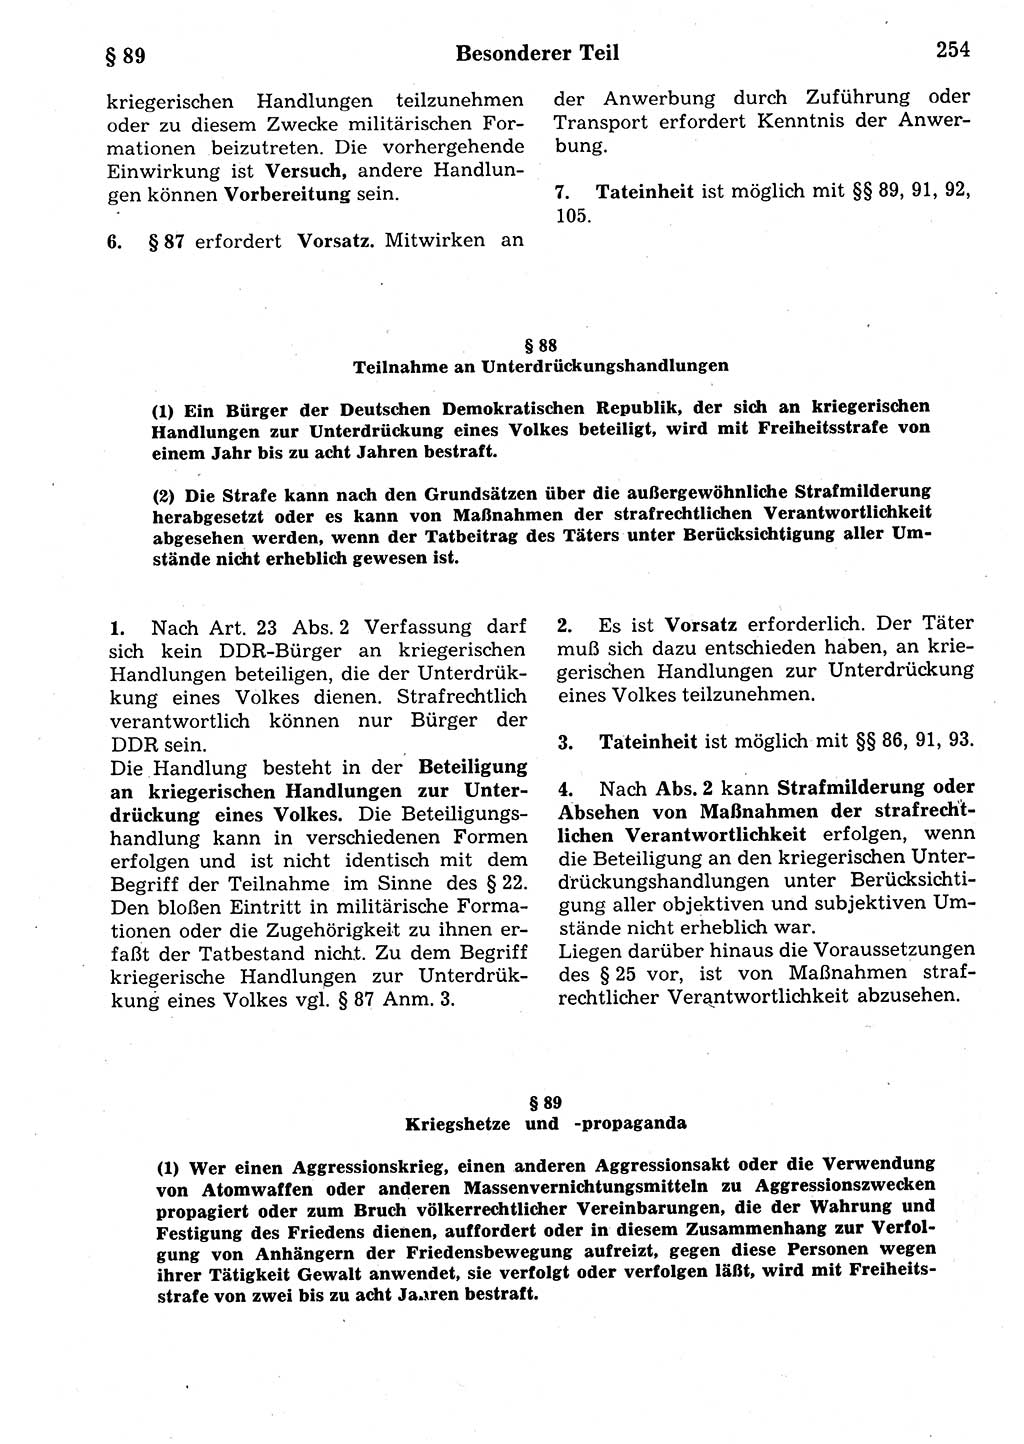 Strafrecht der Deutschen Demokratischen Republik (DDR), Kommentar zum Strafgesetzbuch (StGB) 1987, Seite 254 (Strafr. DDR Komm. StGB 1987, S. 254)